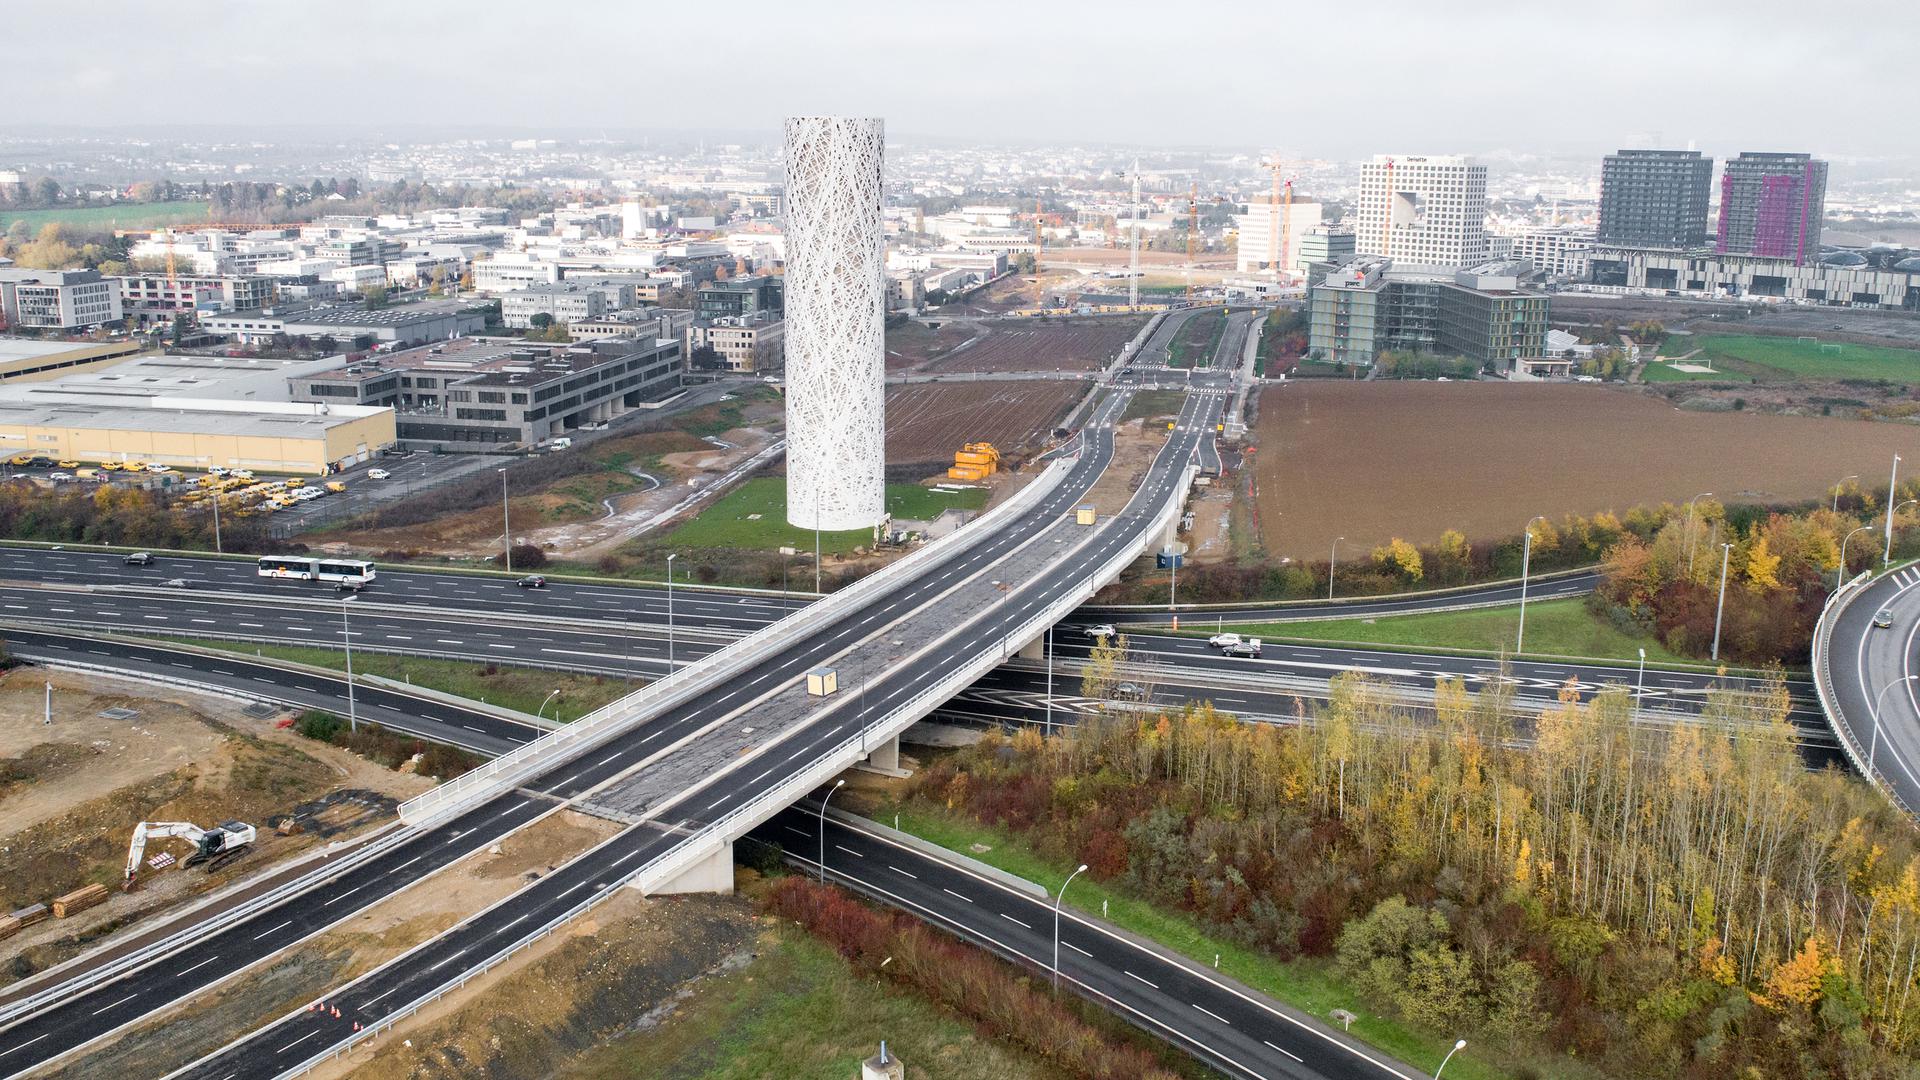 Le nouveau pont permet aux voitures de passer du Ban de Gasperich au Kockelscheuer, mais pas encore aux piétons ni aux cyclistes